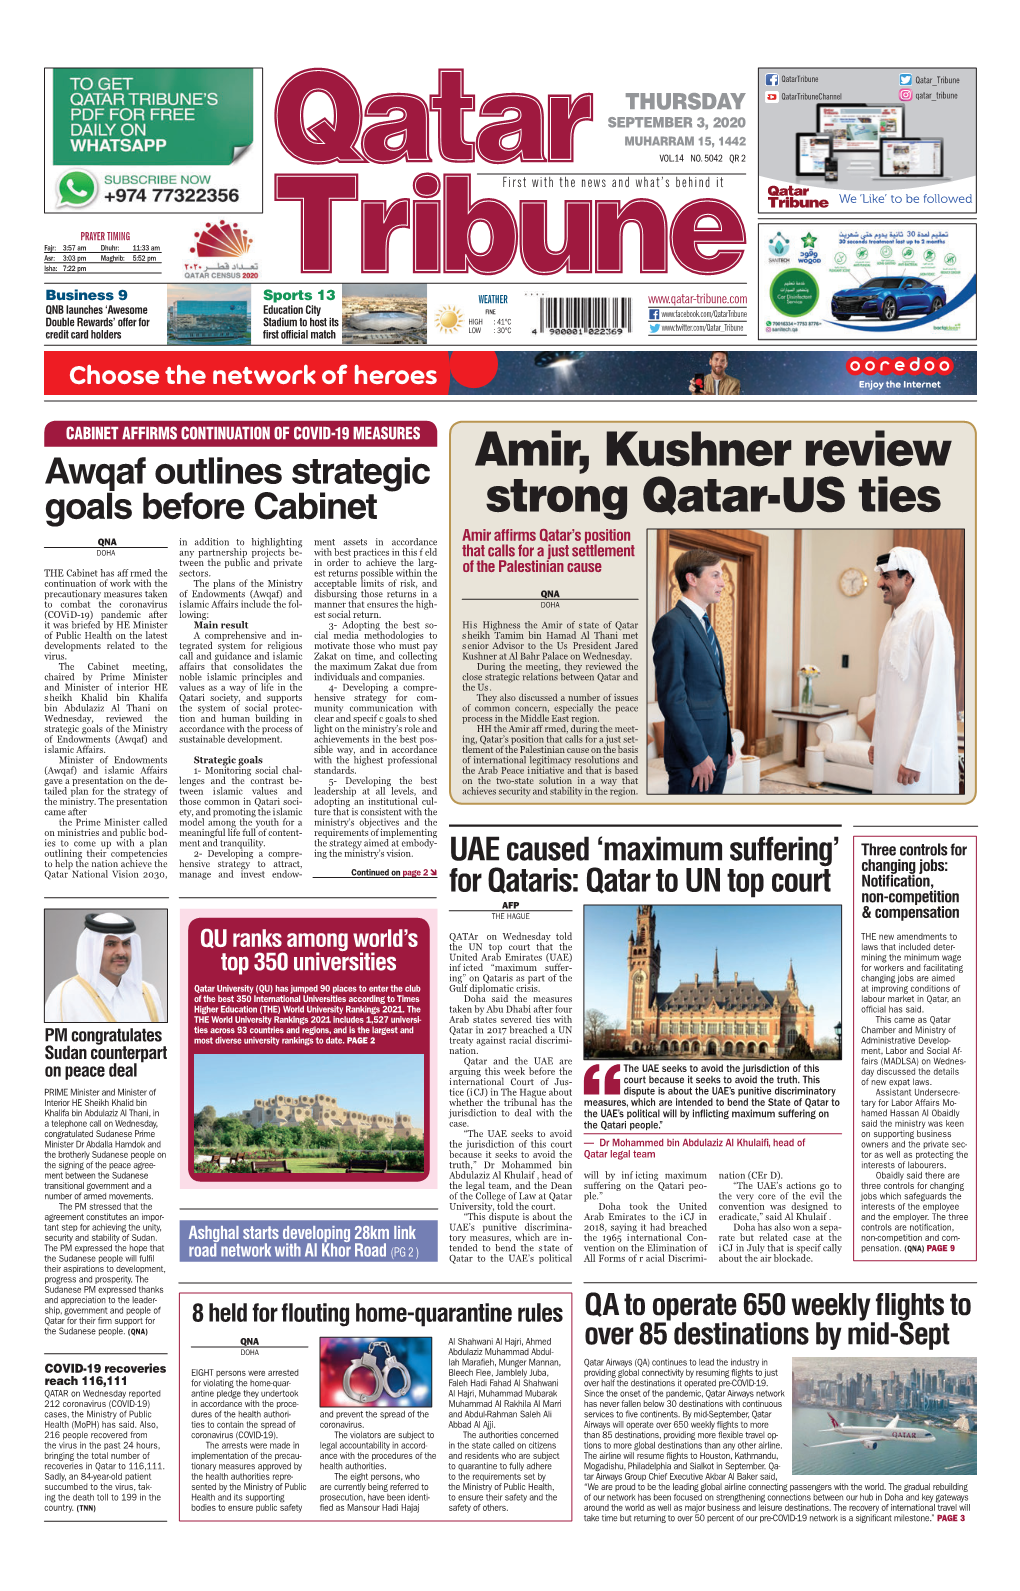 Amir, Kushner Review Strong Qatar-US Ties